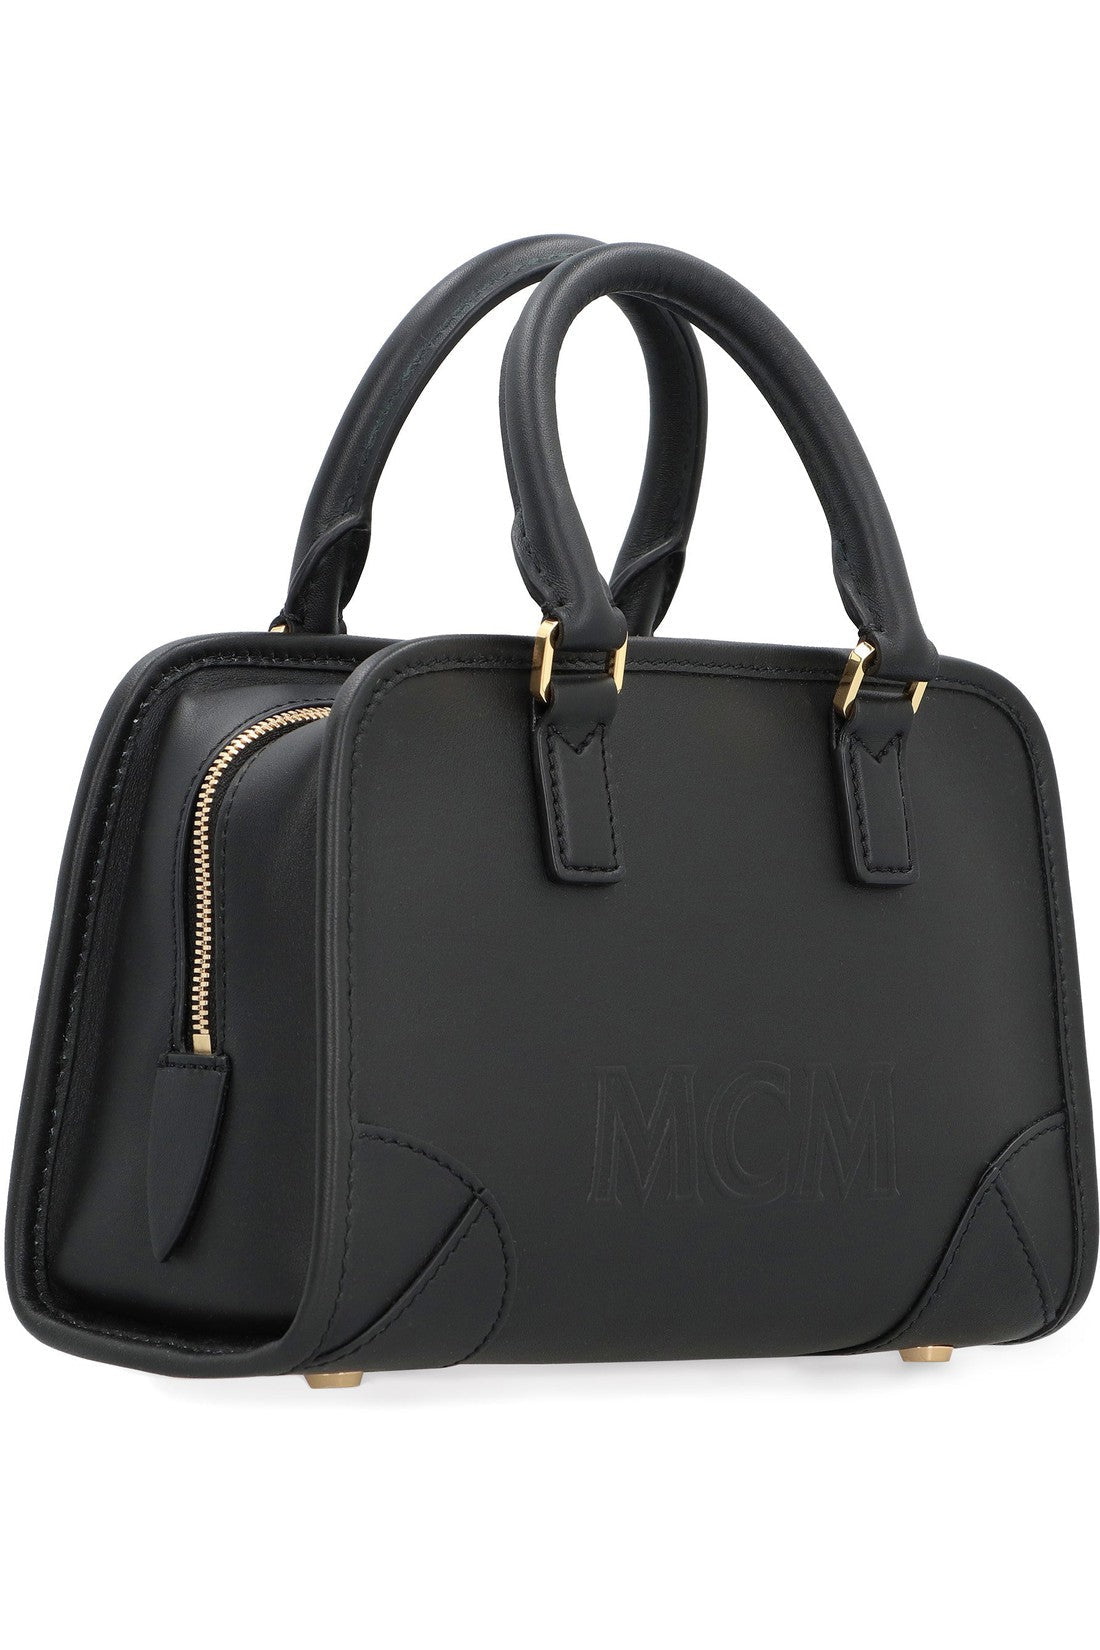 MCM-OUTLET-SALE-Boston leather mini bag-ARCHIVIST